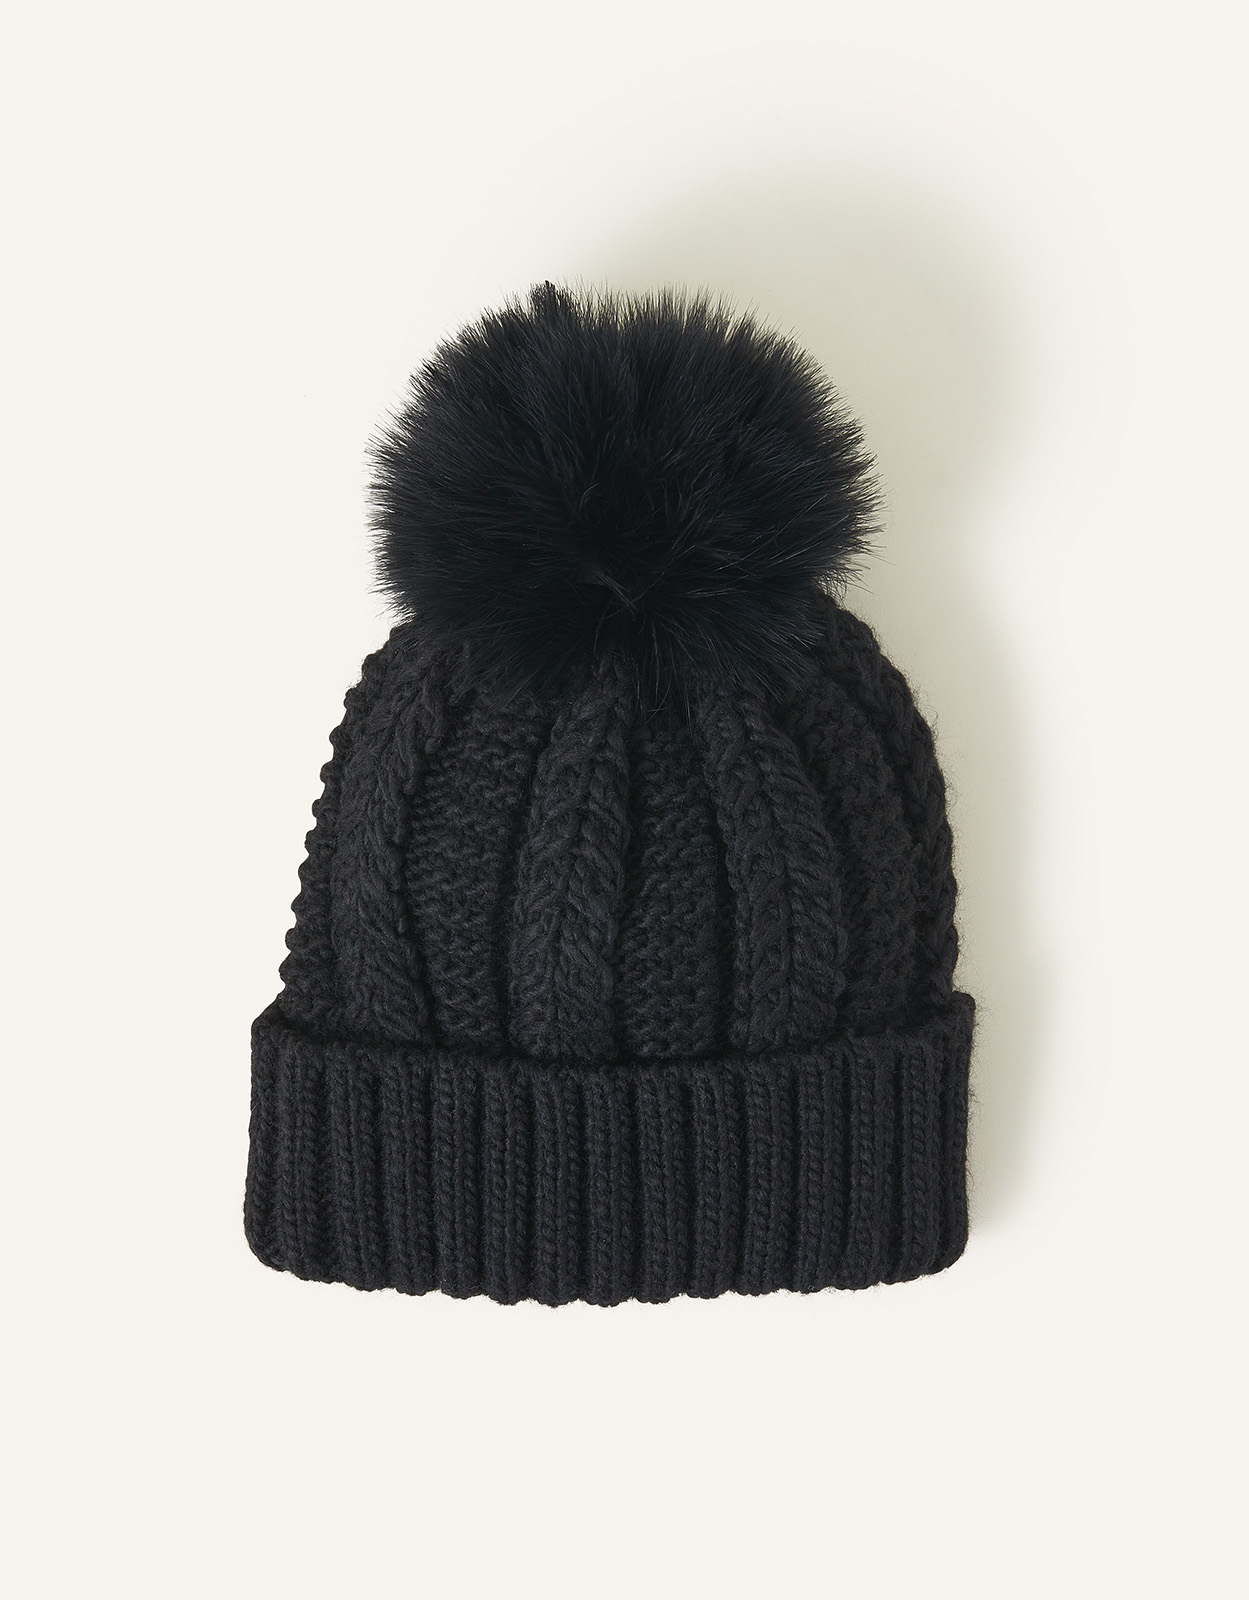 Accessorize Faux Fur Pom-Pom Beanie Hat Black